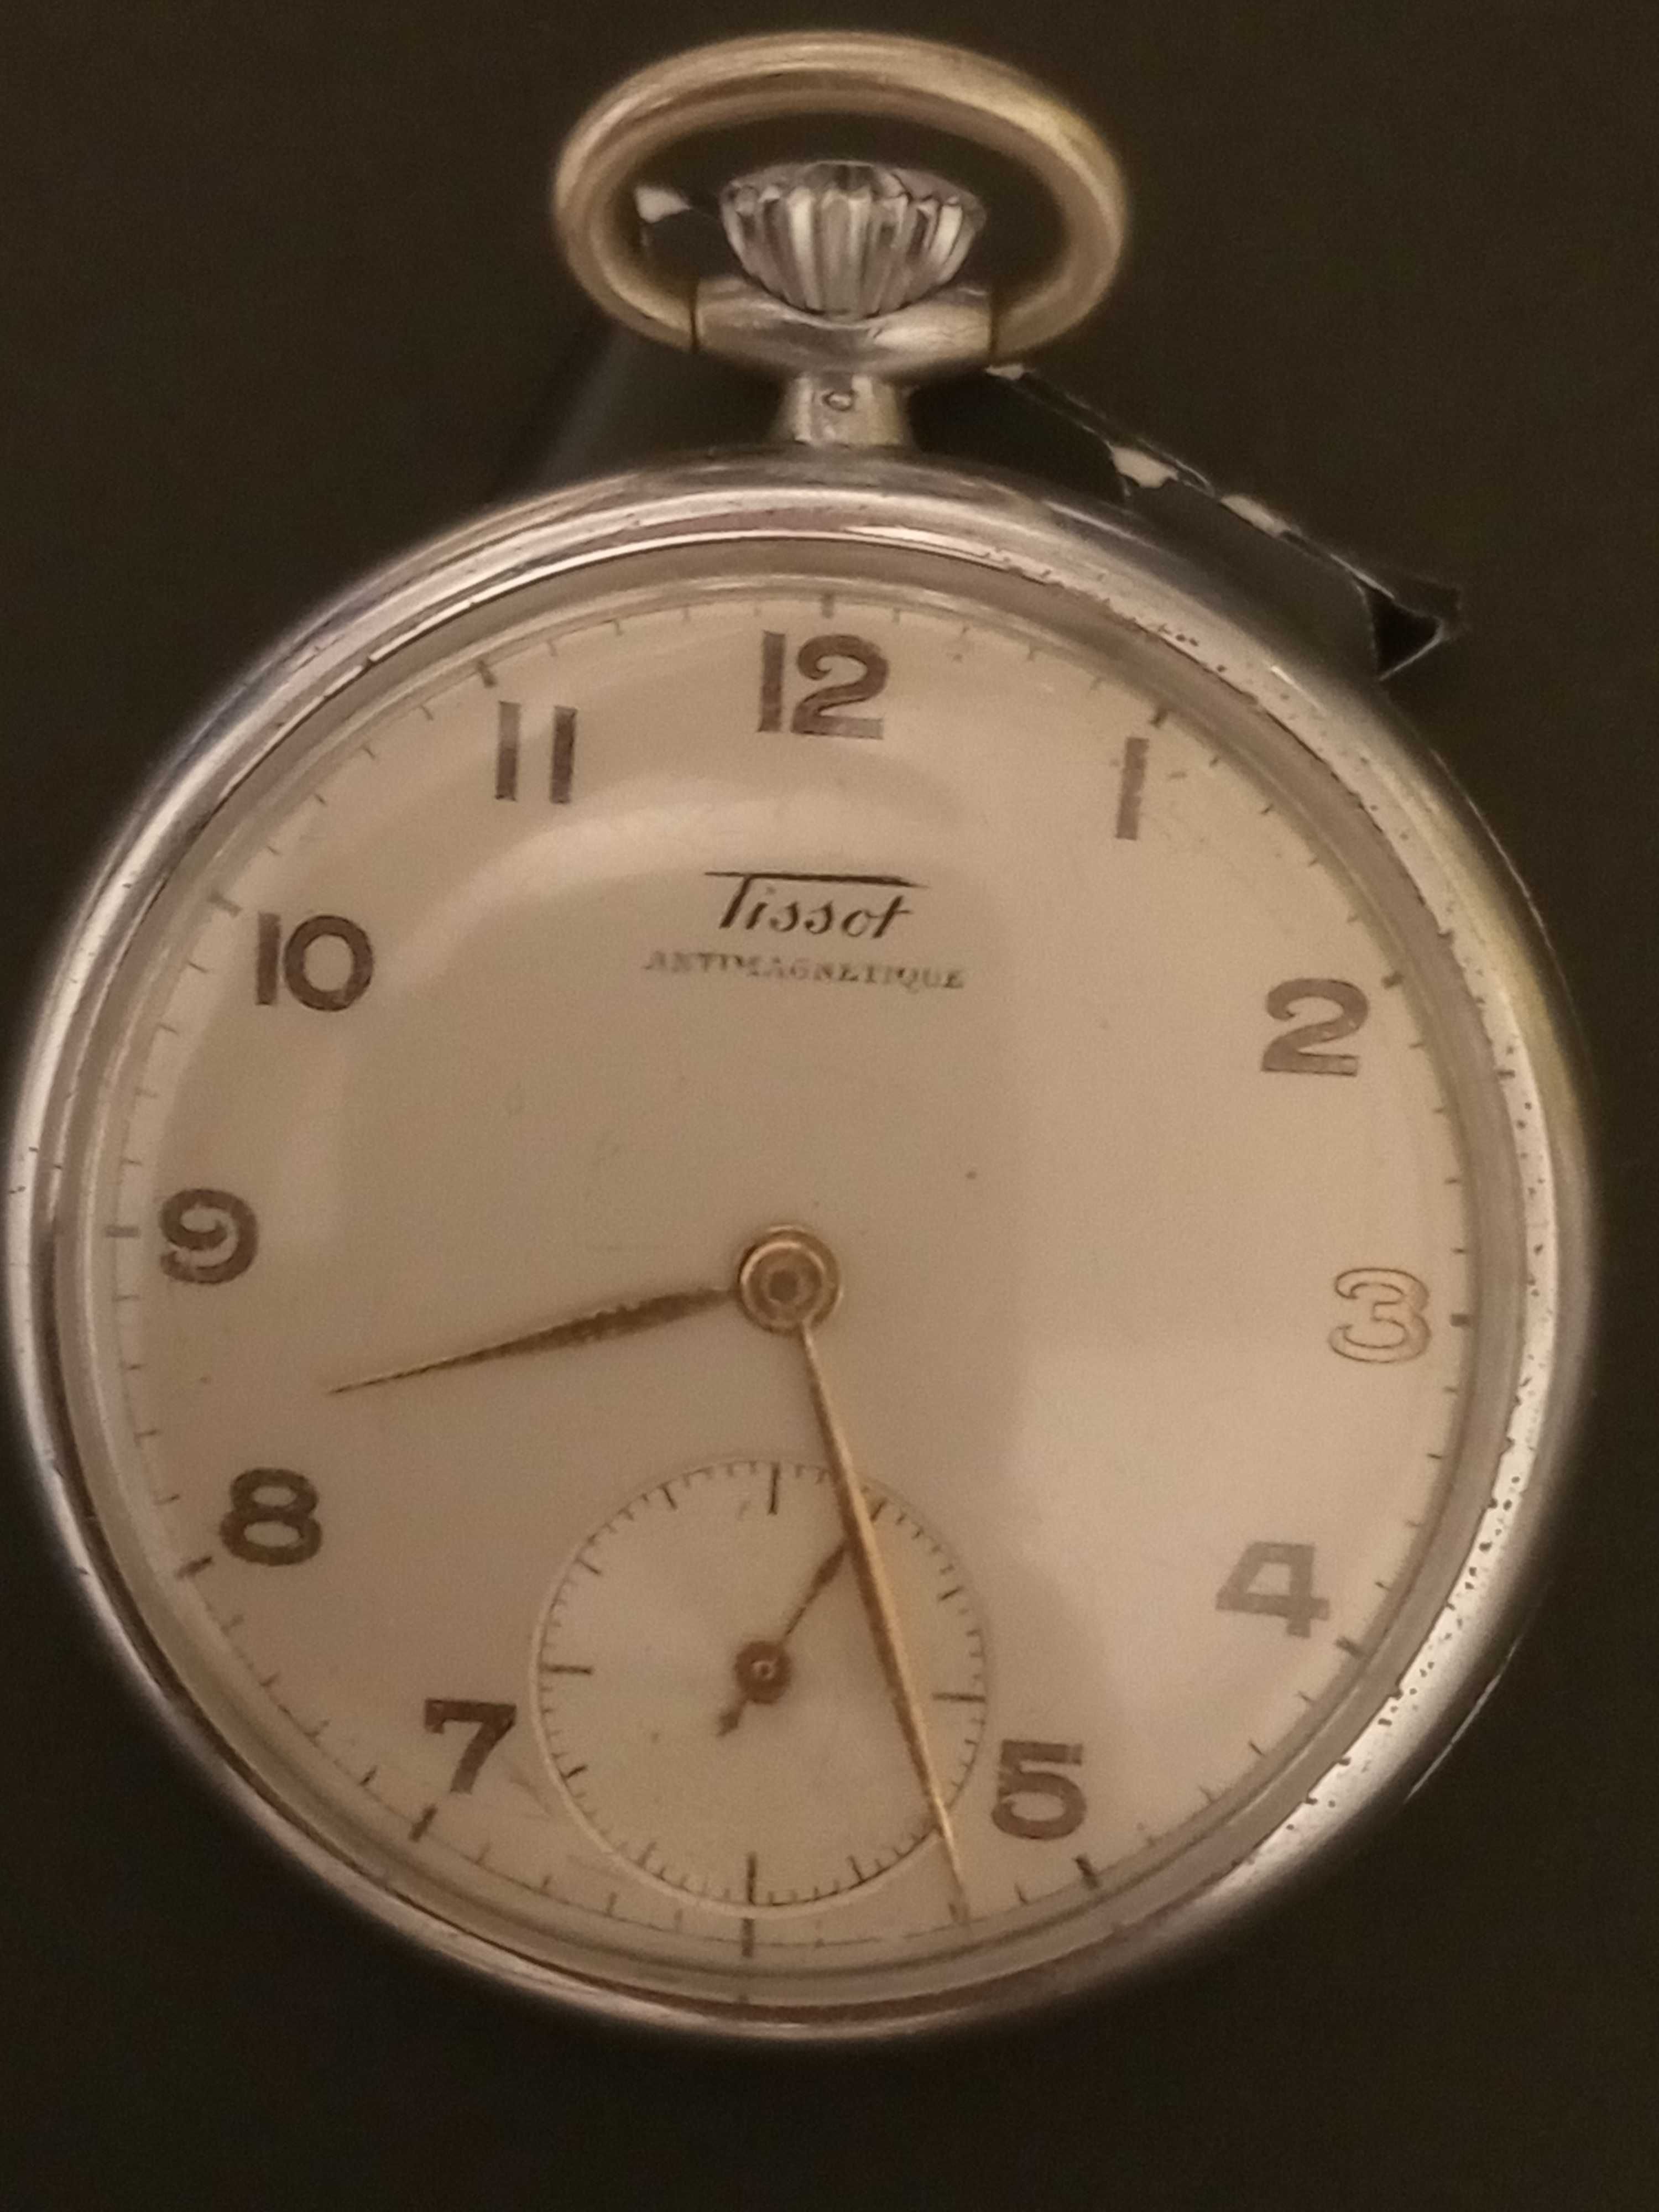 Relógio bolso tissot Antimagnetique antigo a funcionar em bom estado